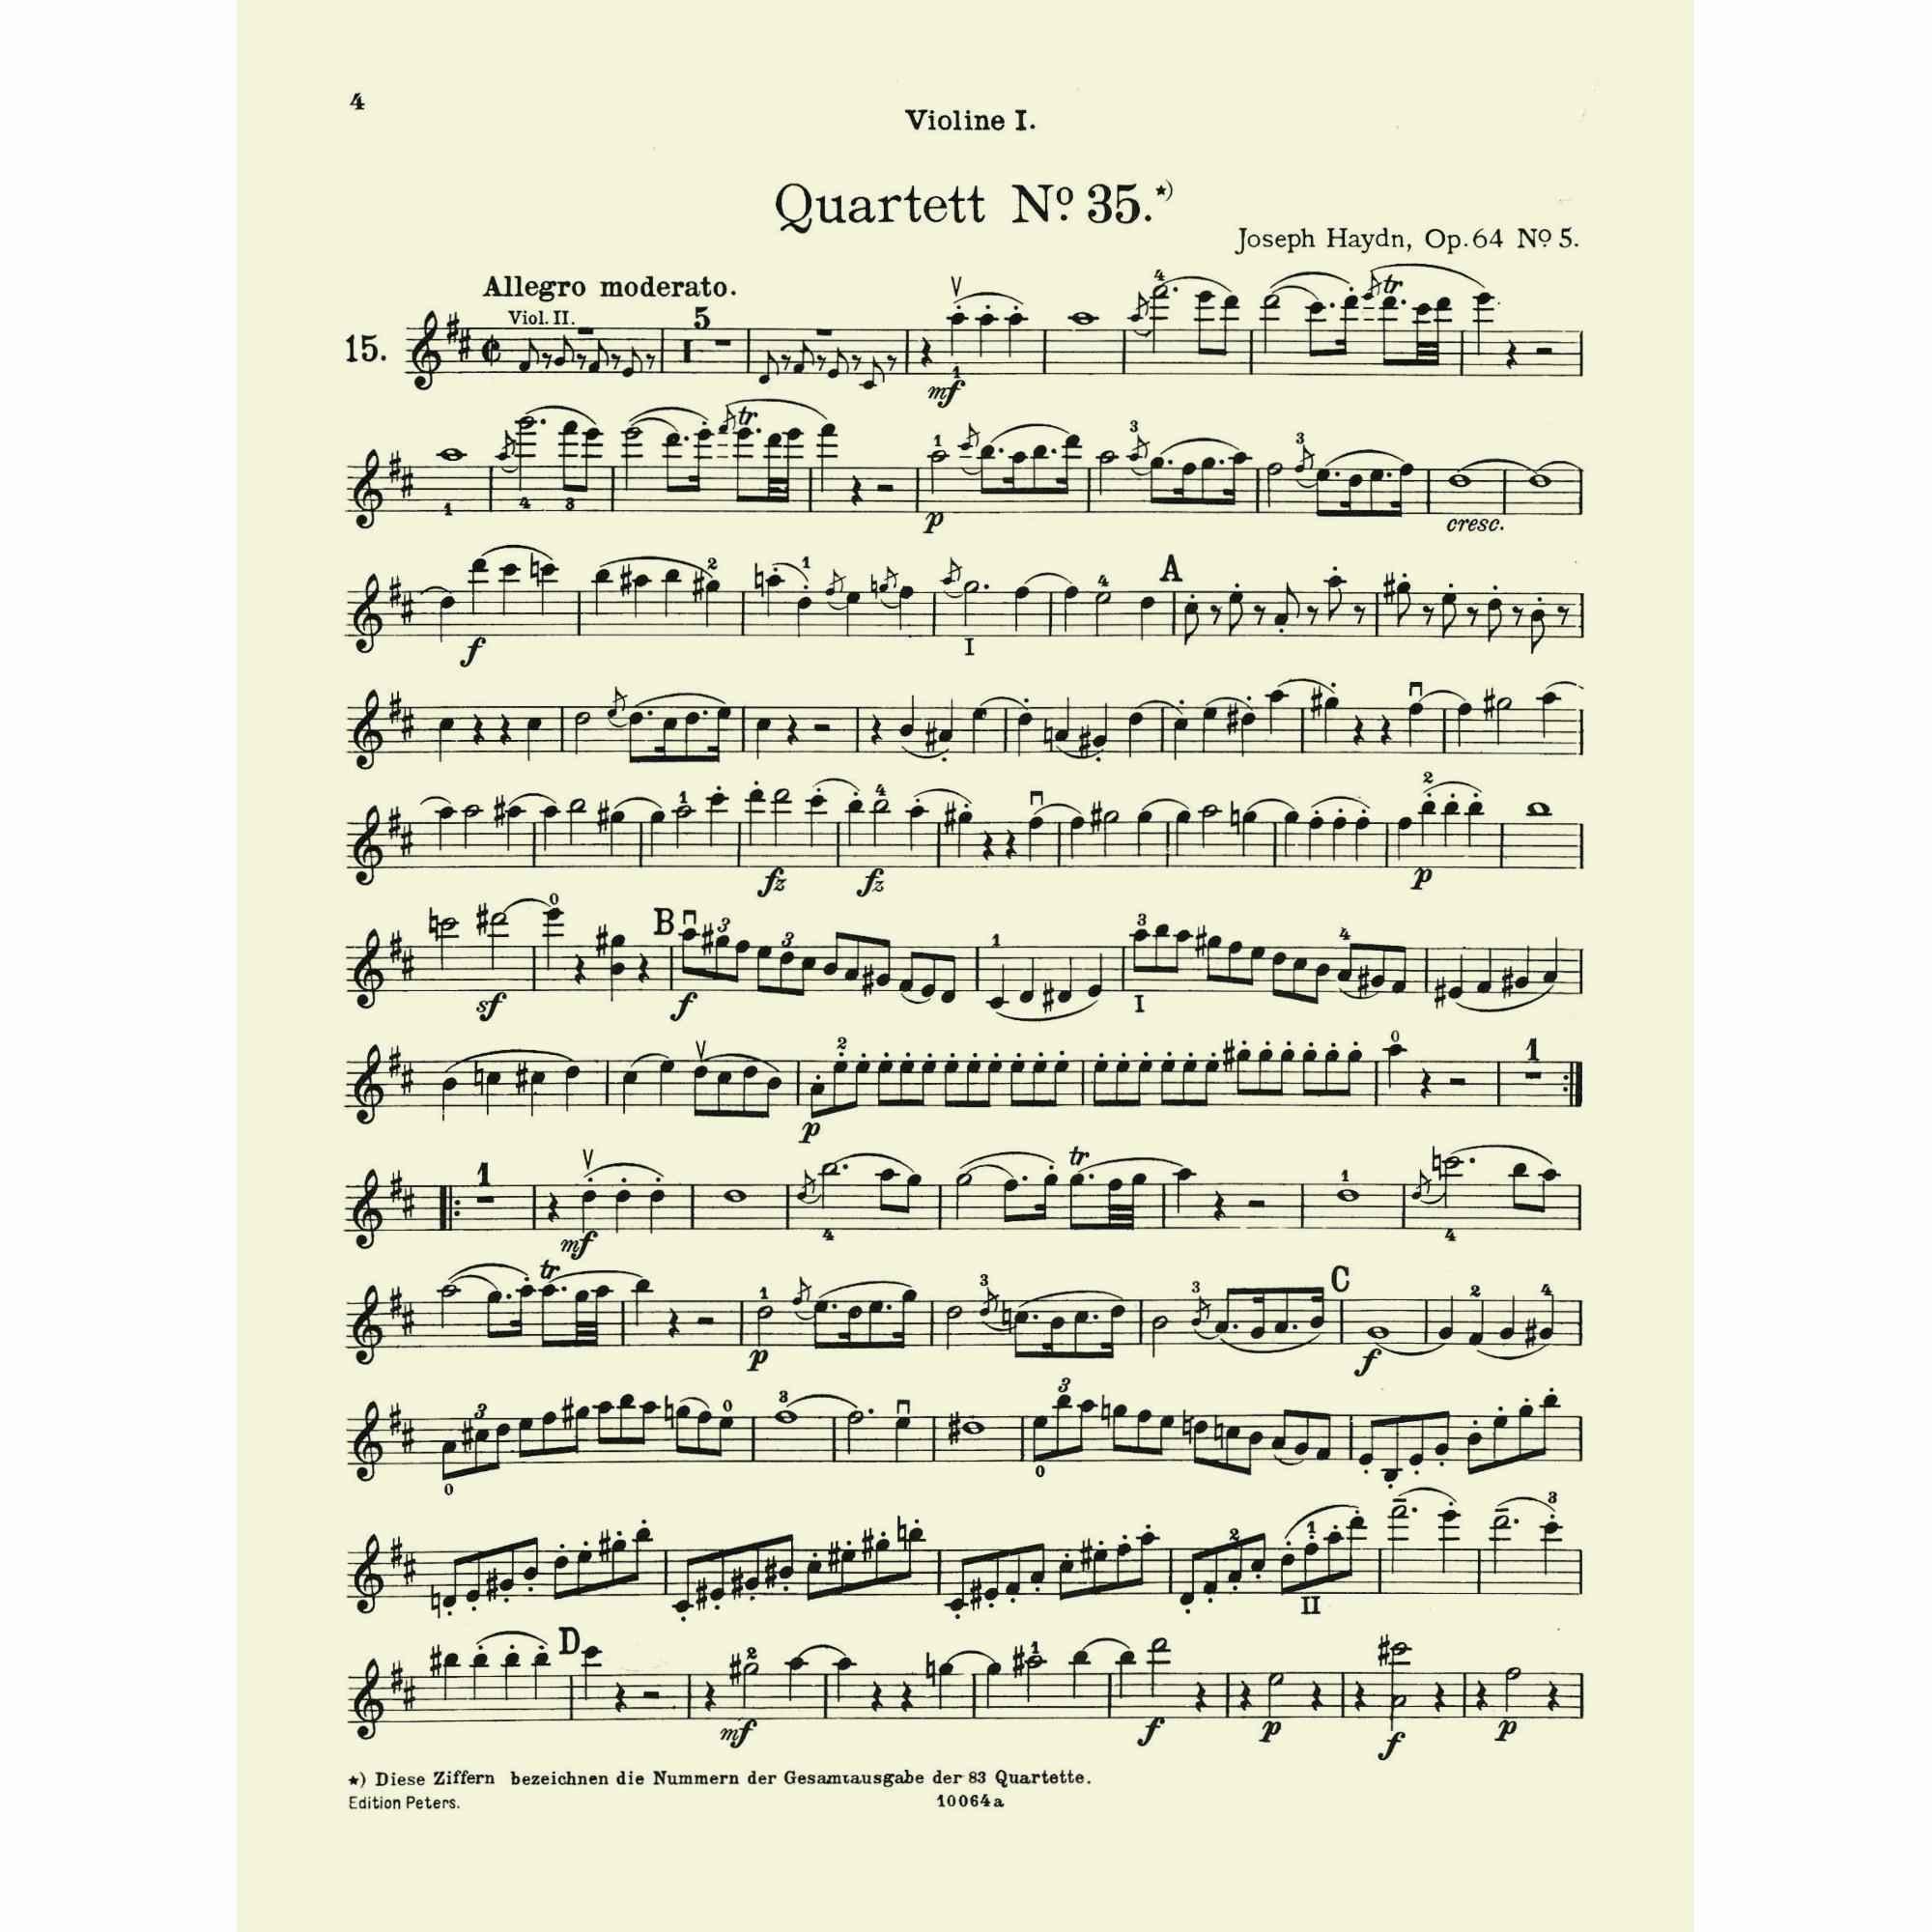 Sample: Violin I (Pg. 4)